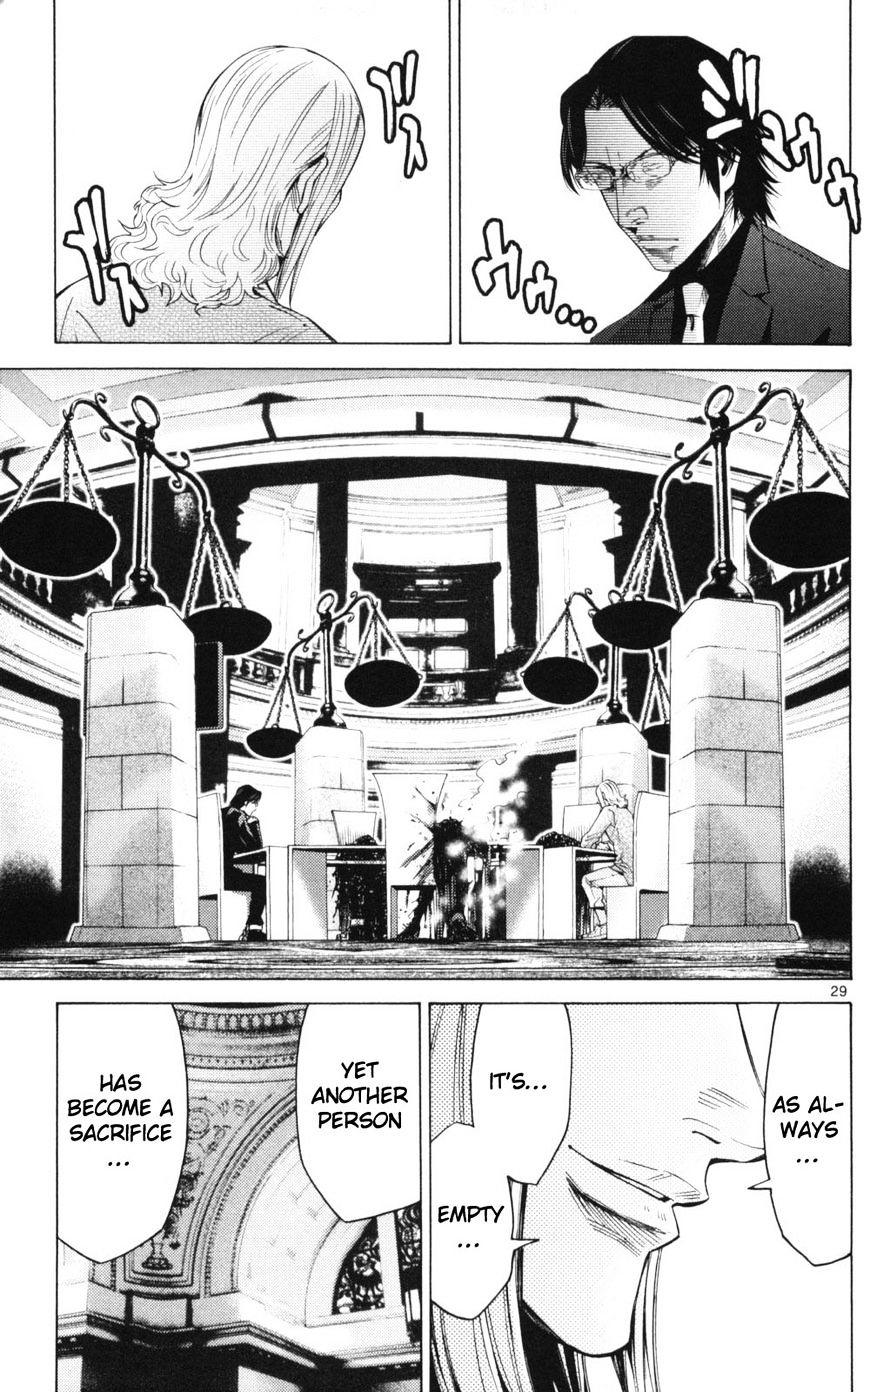 Imawa No Kuni No Alice Chapter 51.3 : Side Story 6 - King Of Diamonds (3) page 29 - Mangakakalot